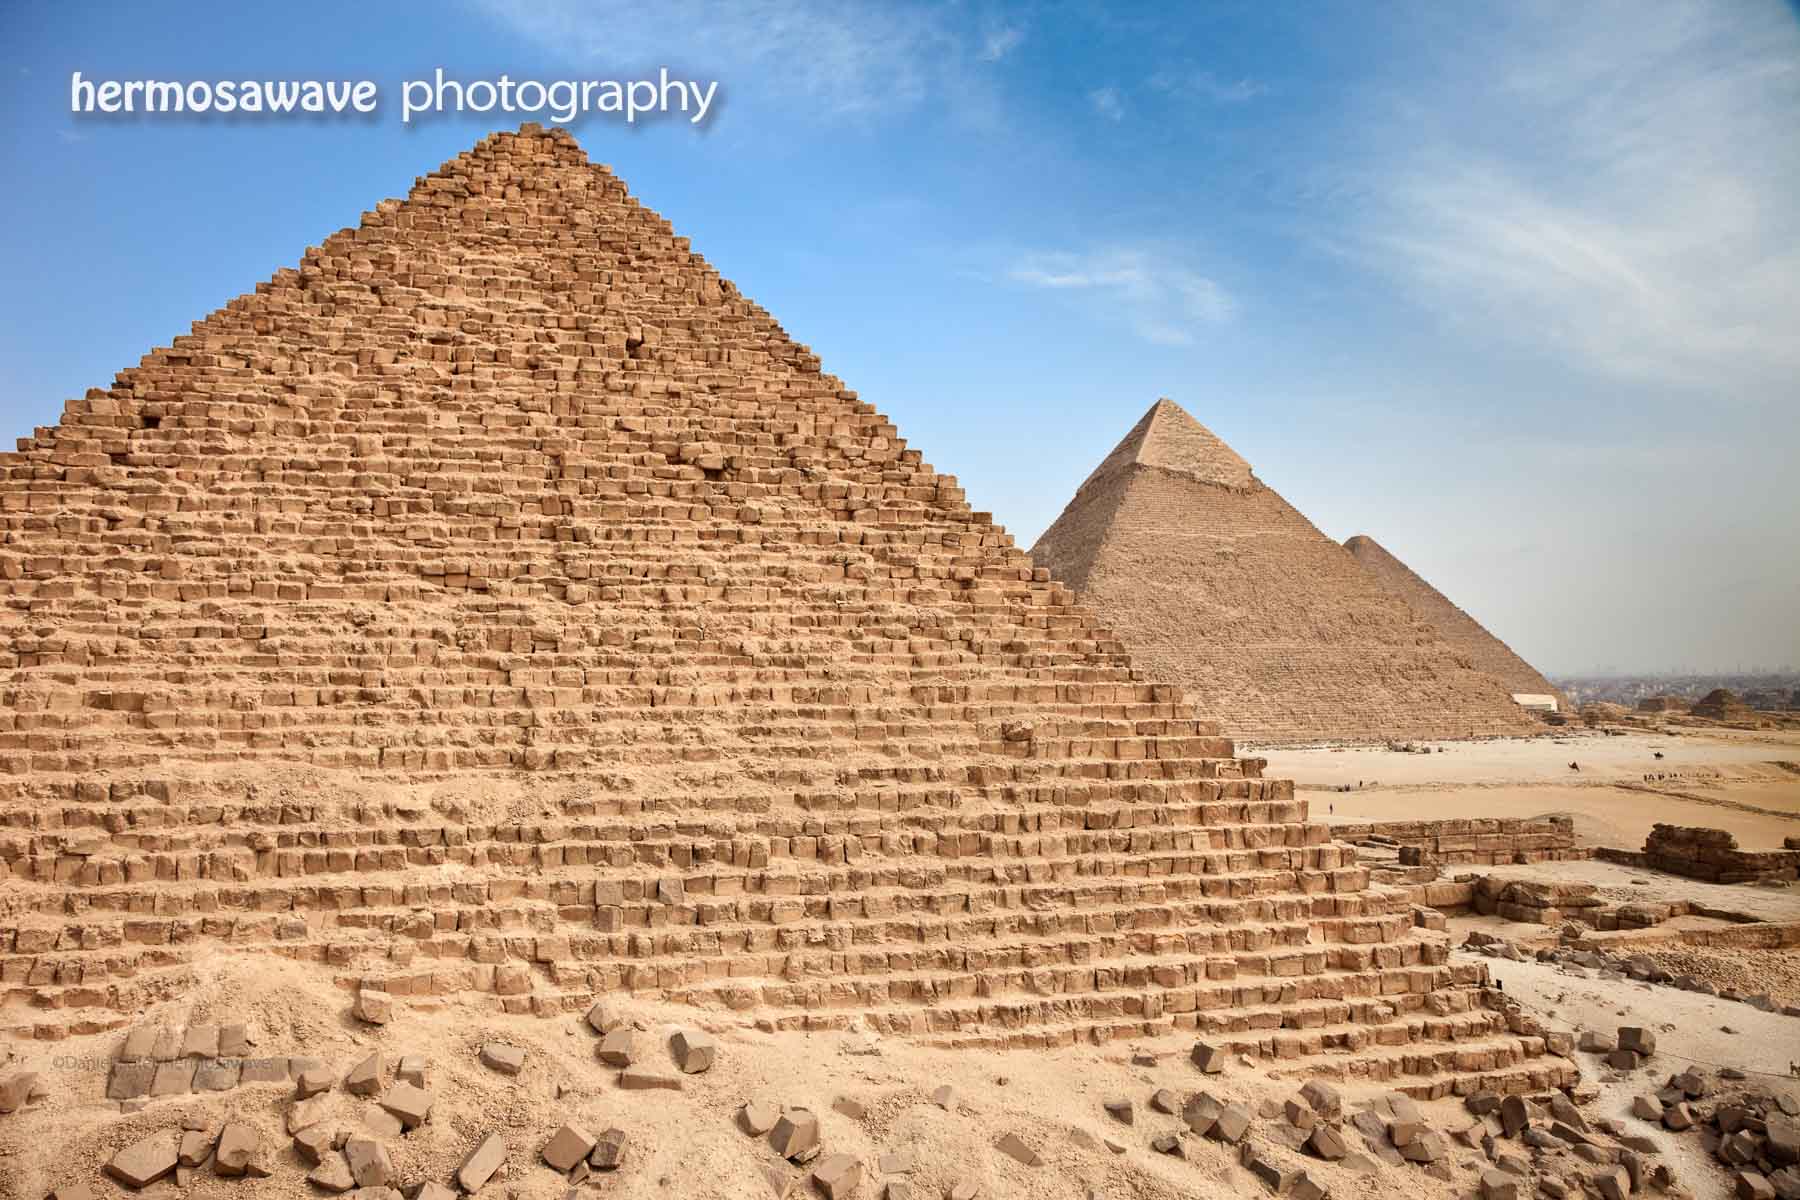 Three Pyramids at Giza